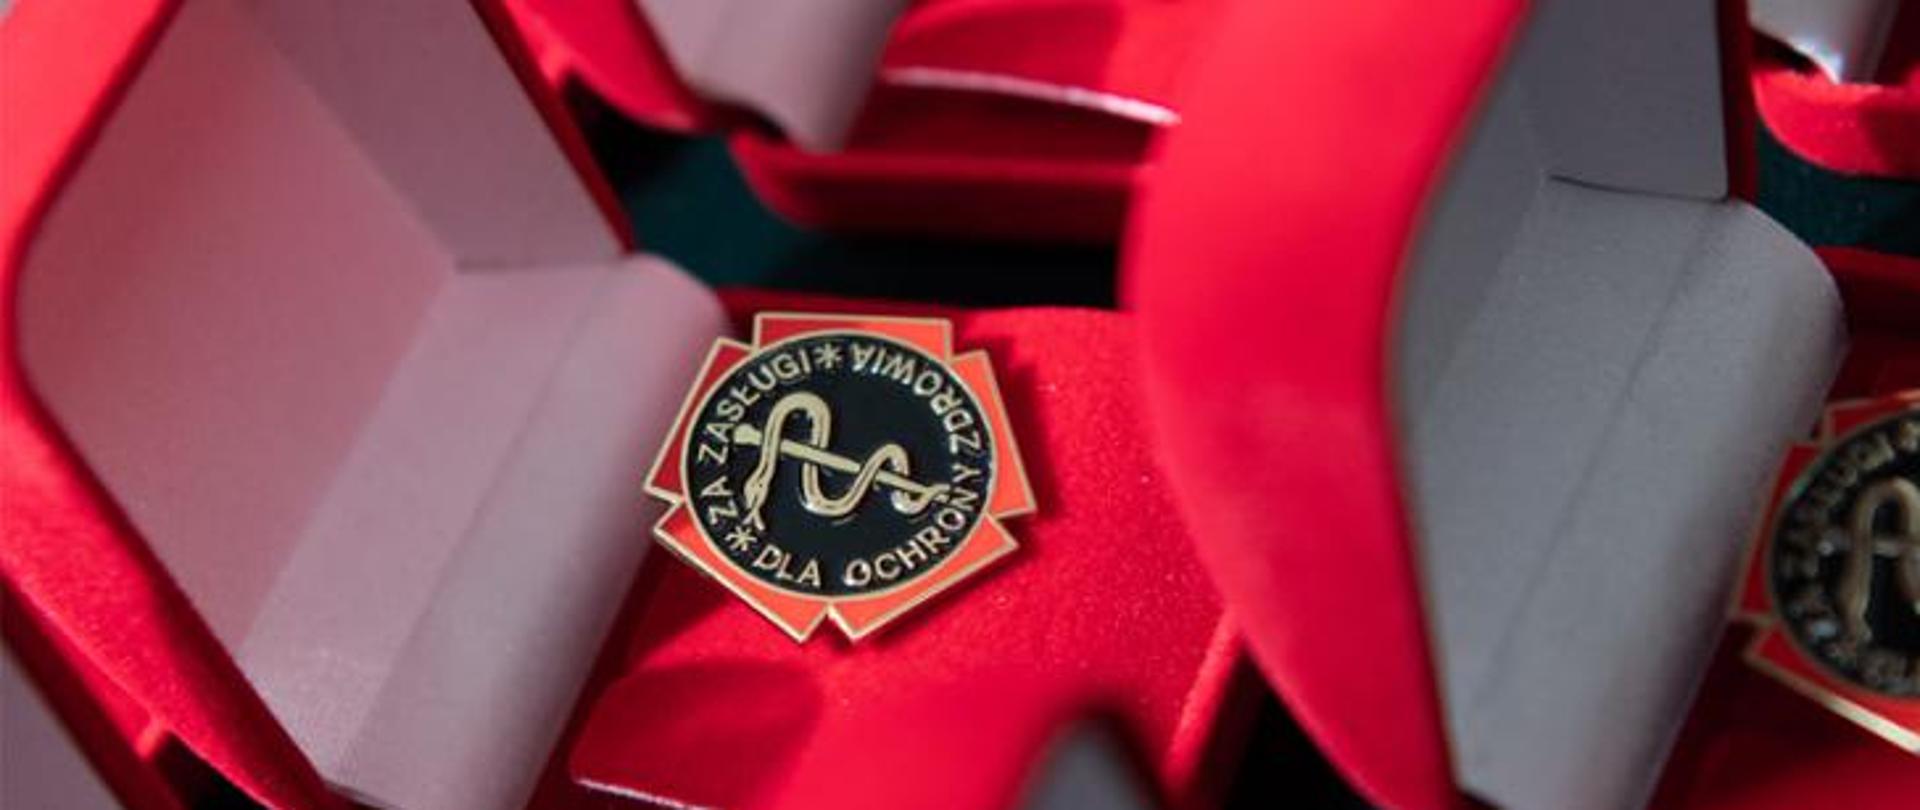 Odznaka honorowa "Za zasługi dla ochrony zdrowia" w czerwonym opakowaniu 